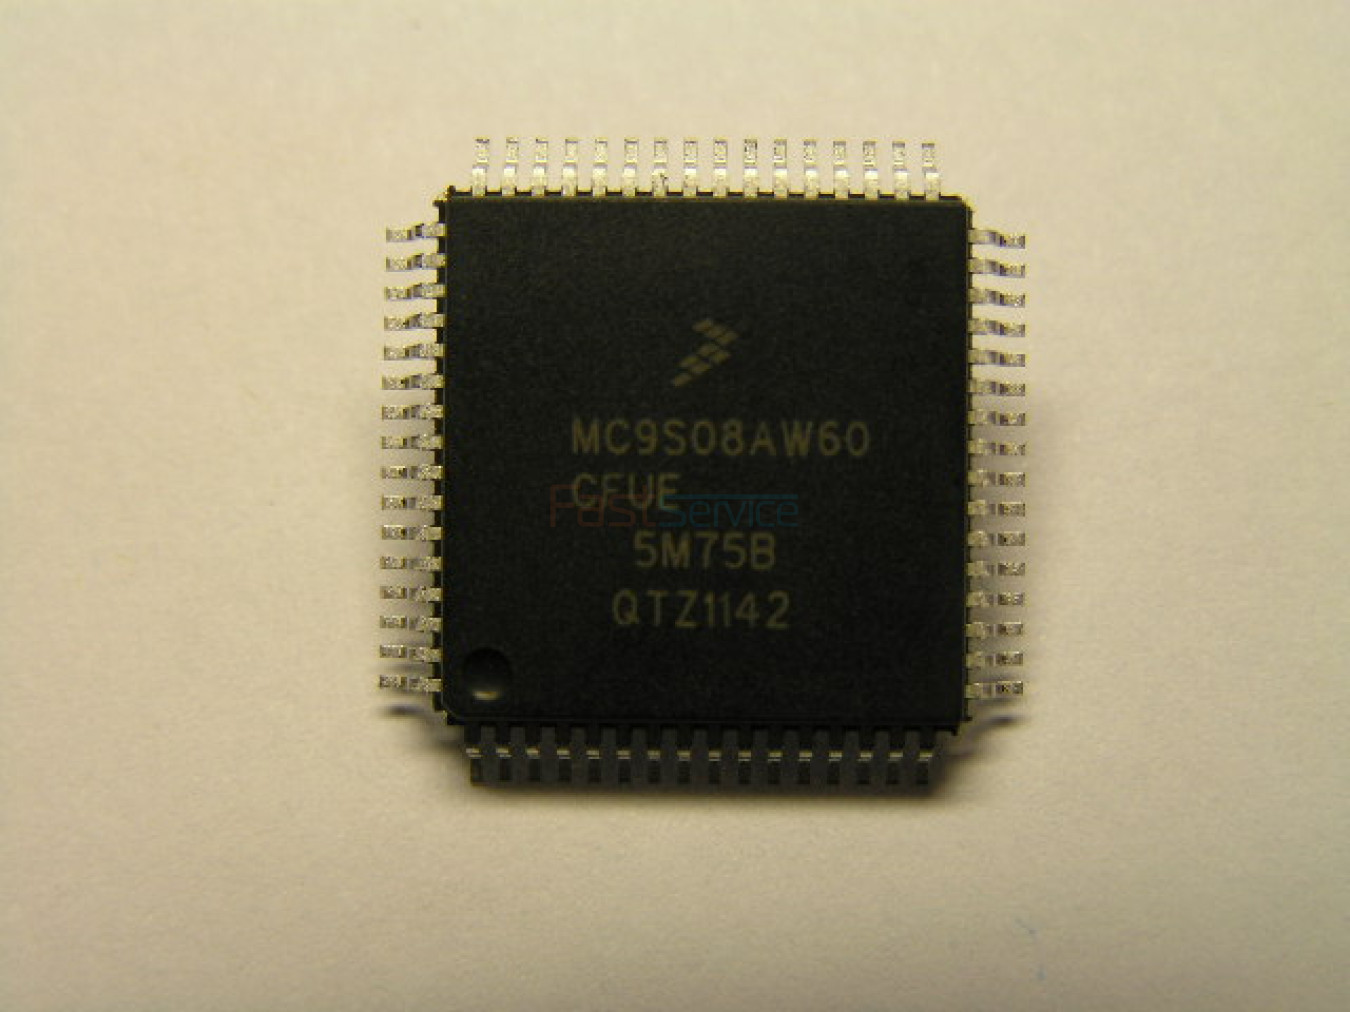 Процессор на СМА ZANUSSI ELECTROLUX (EWM1100, EWM2100 и др) MC9S08AW60 прошитый